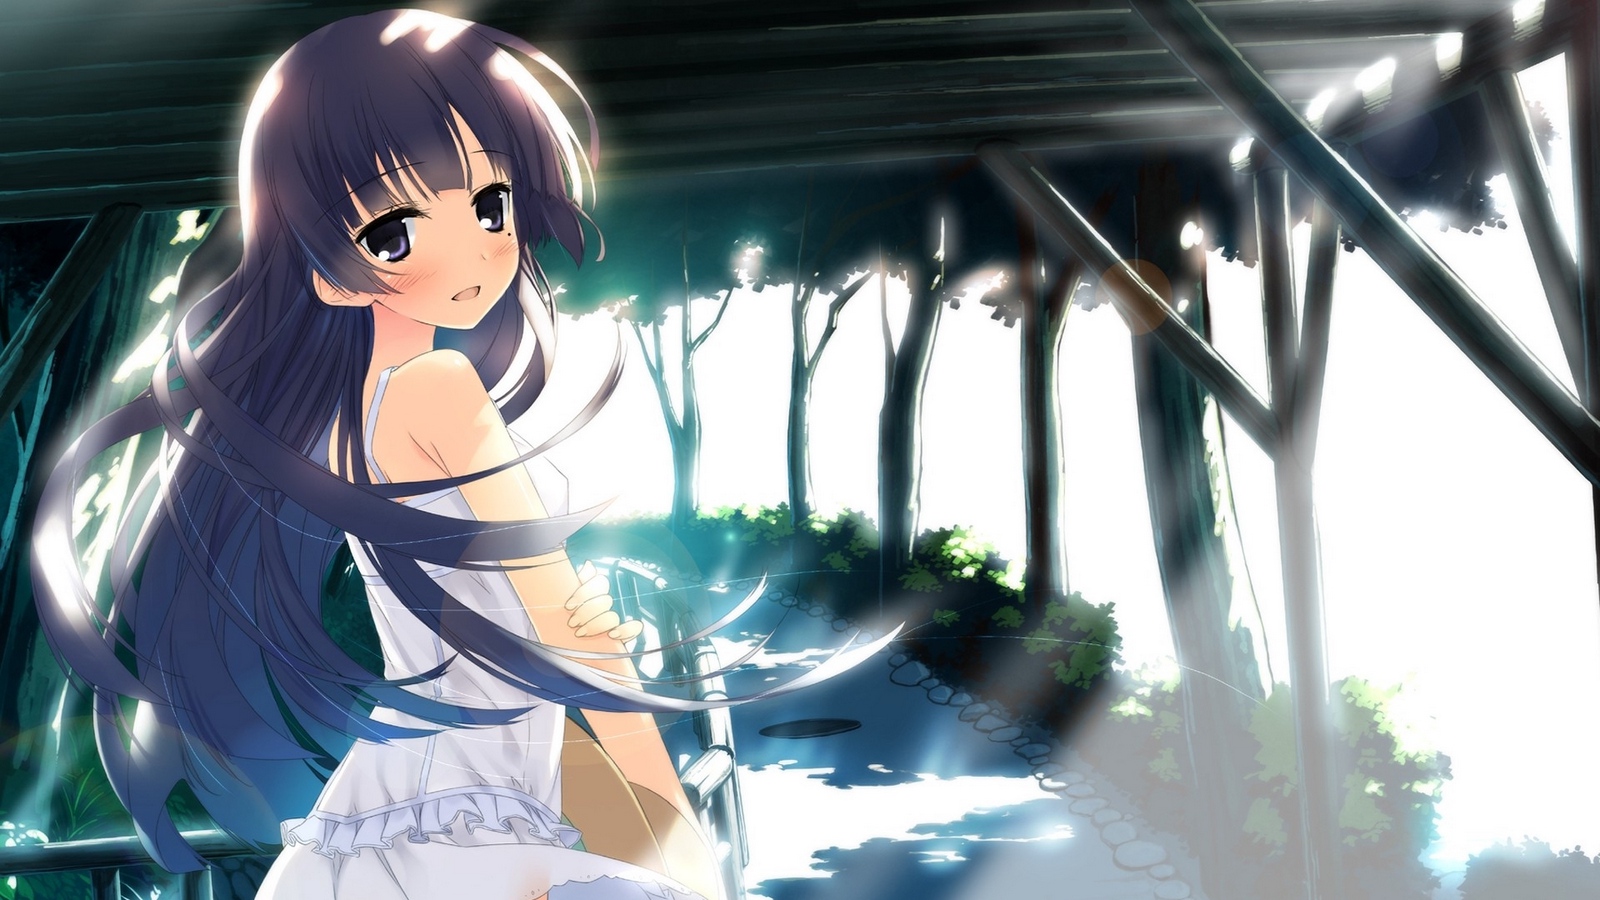 Wallpaper Anime Girl, Tender, Cool, Summer - Anime Girl Summer Background -  1600x900 Wallpaper 